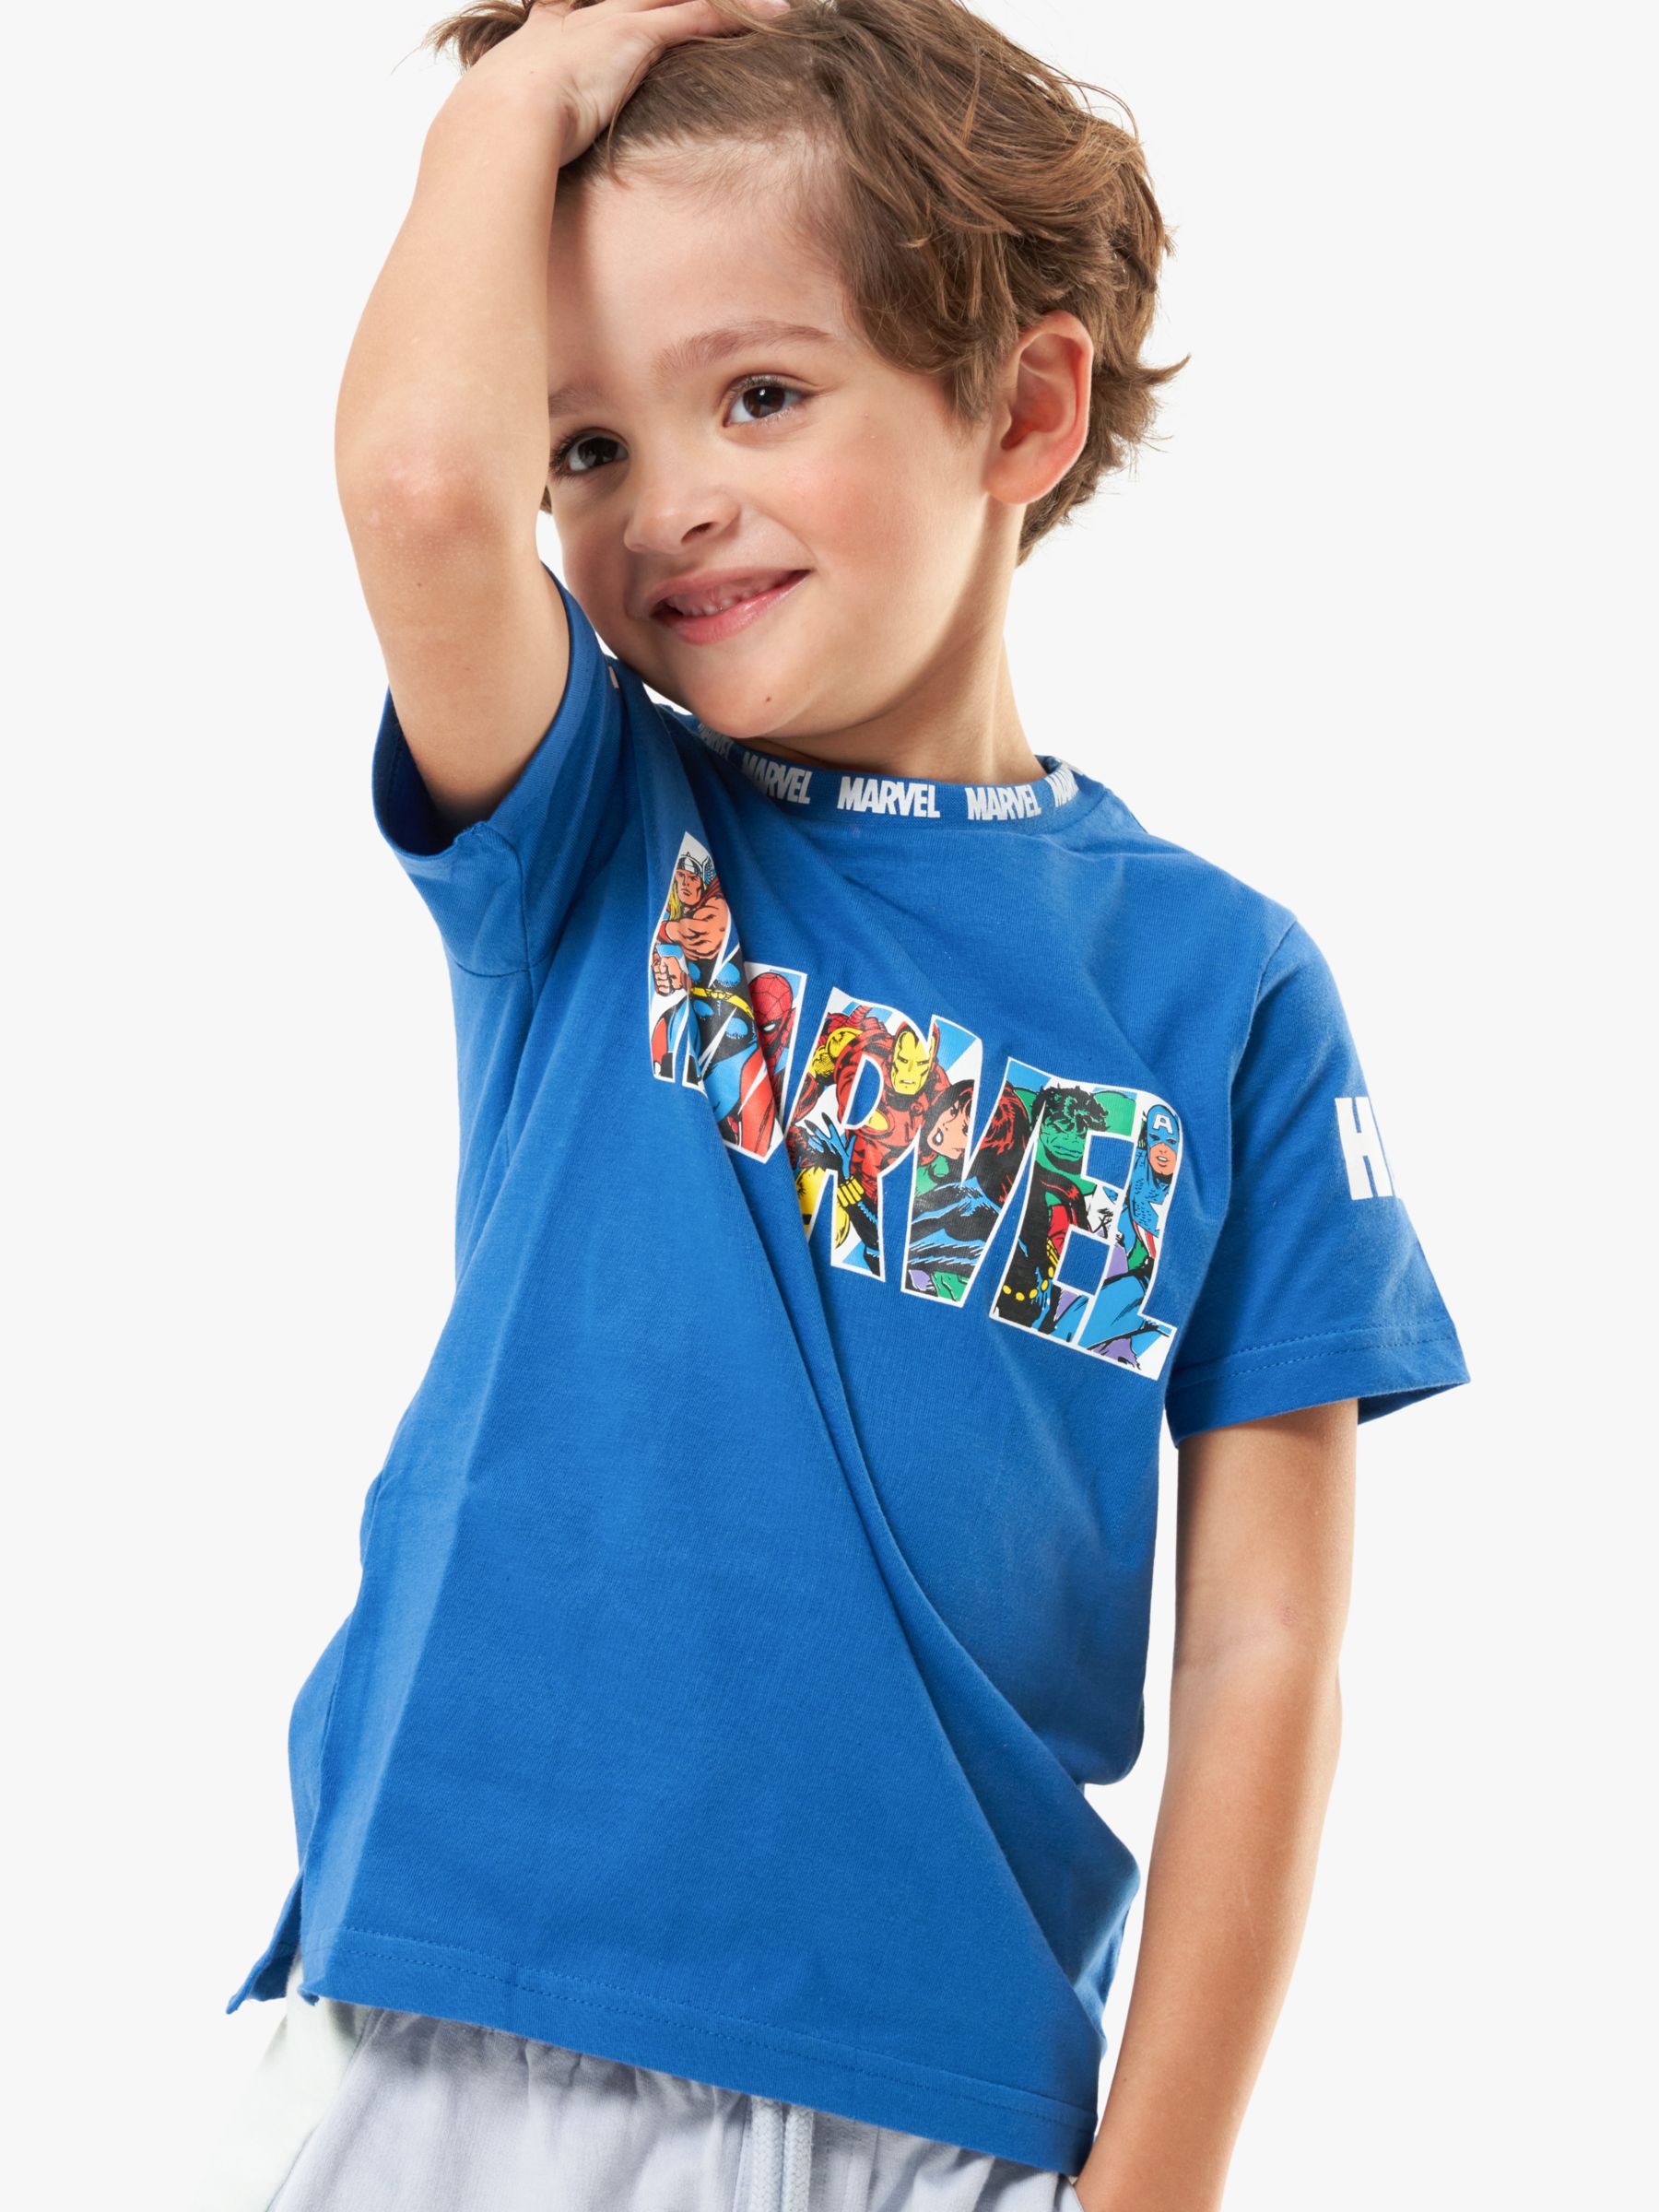 Buy Angel & Rocket Kids' Marvel Hero T-Shirt, Blue Online at johnlewis.com